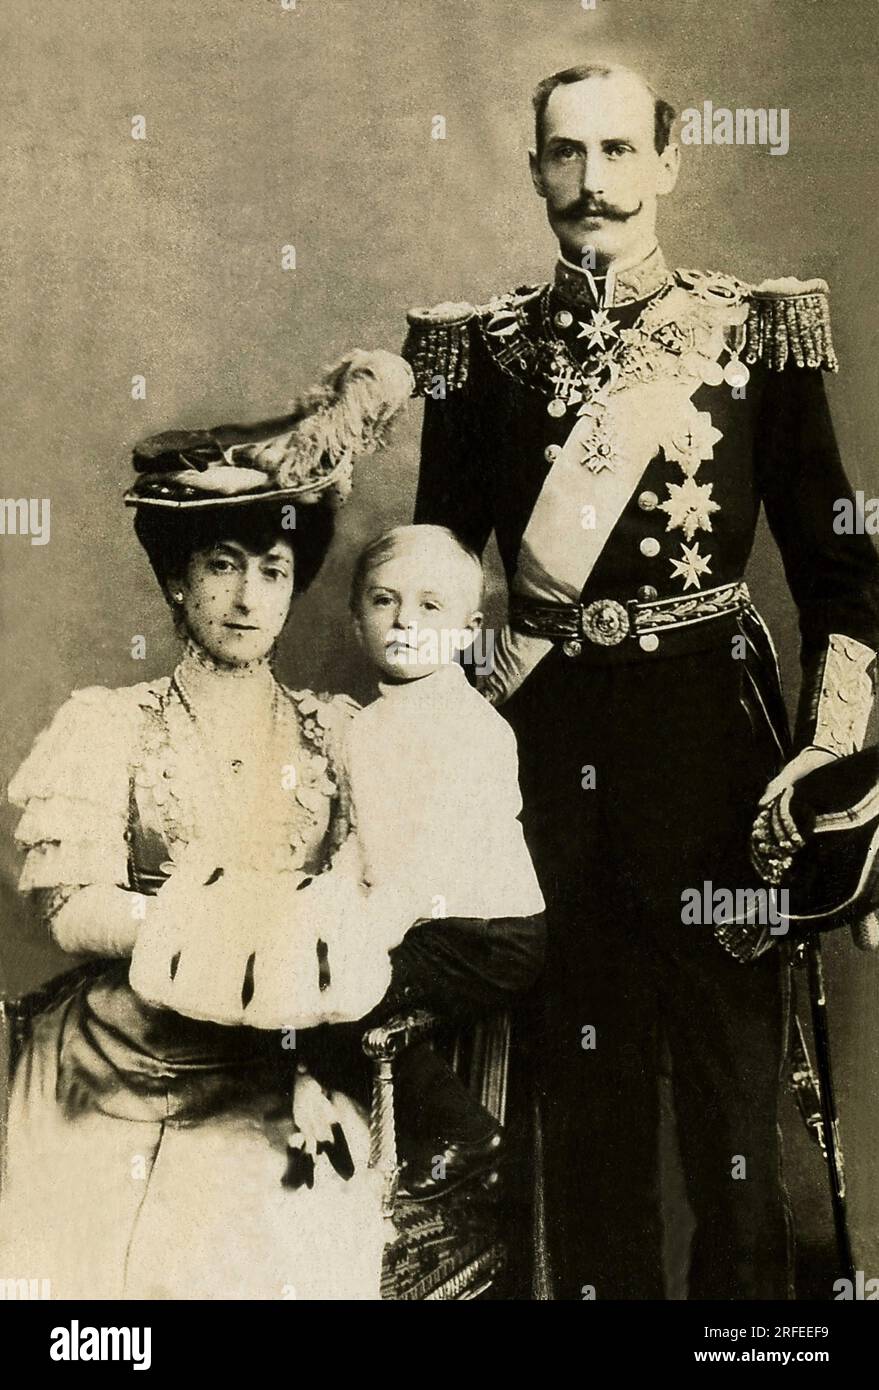 Portrait de Haakon VII (1872-1957), roi de Norvege de 1905 a 1957 et la reine Maud. Photographie, debut du 20e siecle. Stock Photo